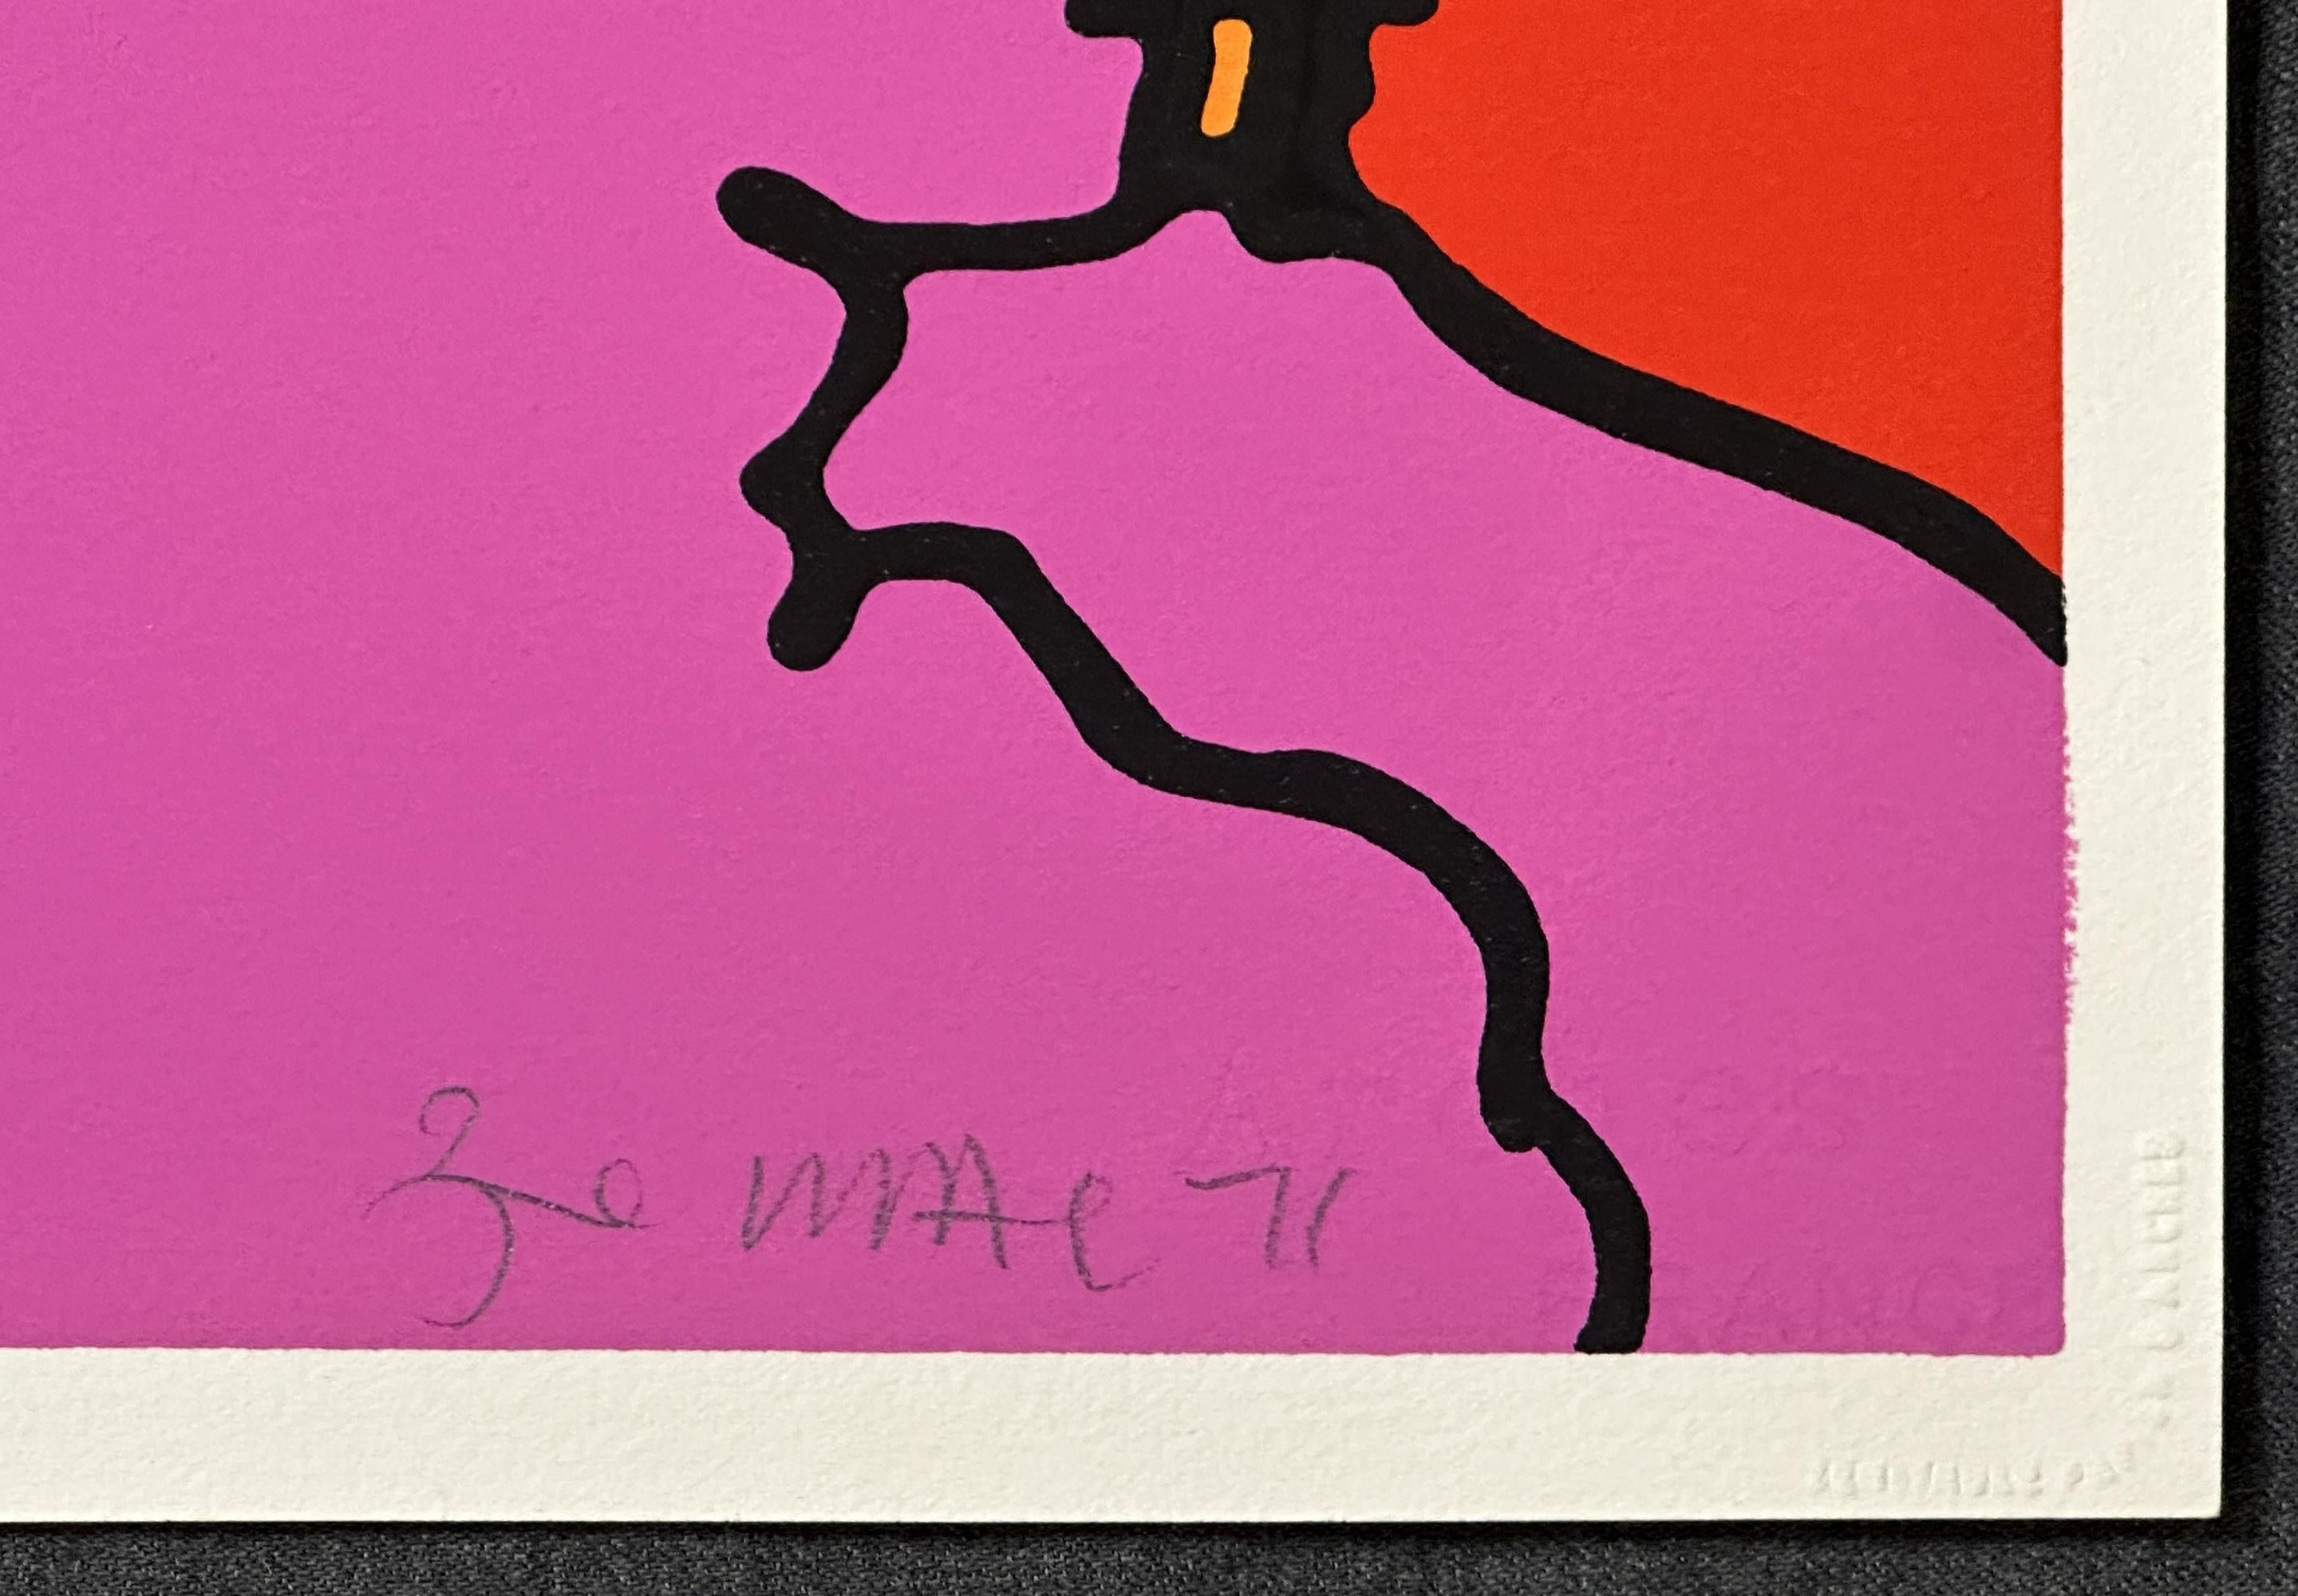 Name des Künstlers: Peter Max
Haus in den Wolken 
Jahr: 1971
Medium Typ: Siebdruck, auf Arches-Papier
Größe-Breite  Größe-Höhe: 22